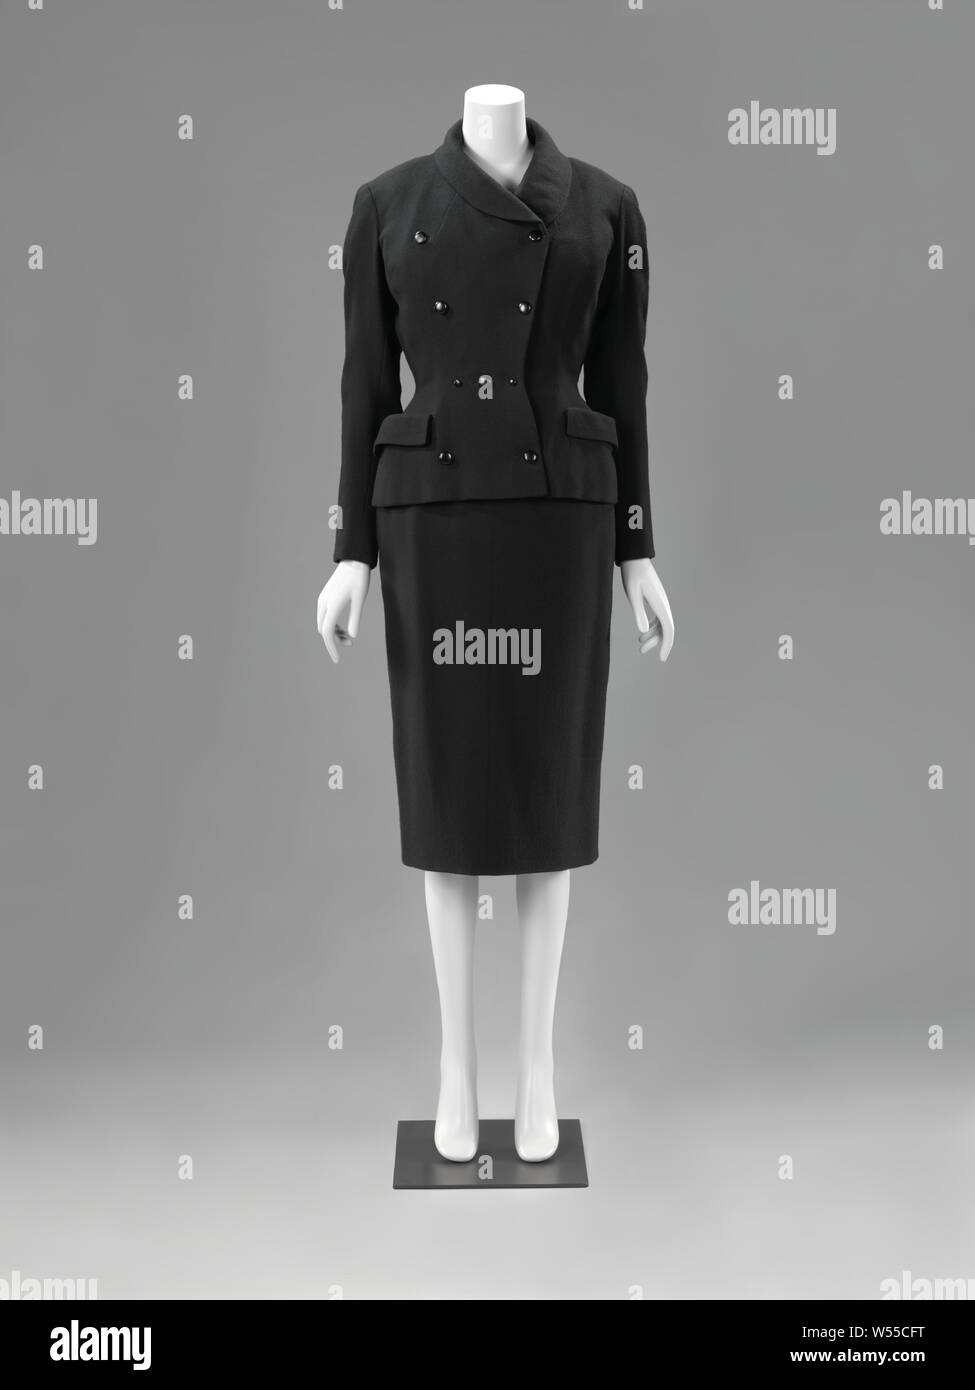 Vestido y chaqueta (complet) Complet: vestido y chaqueta, Complet de lana  negra, compuesto de un vestido (a) con una chaqueta corta montado (B).  Modelo: (a) con cuello redondo, mangas cortas, falda de